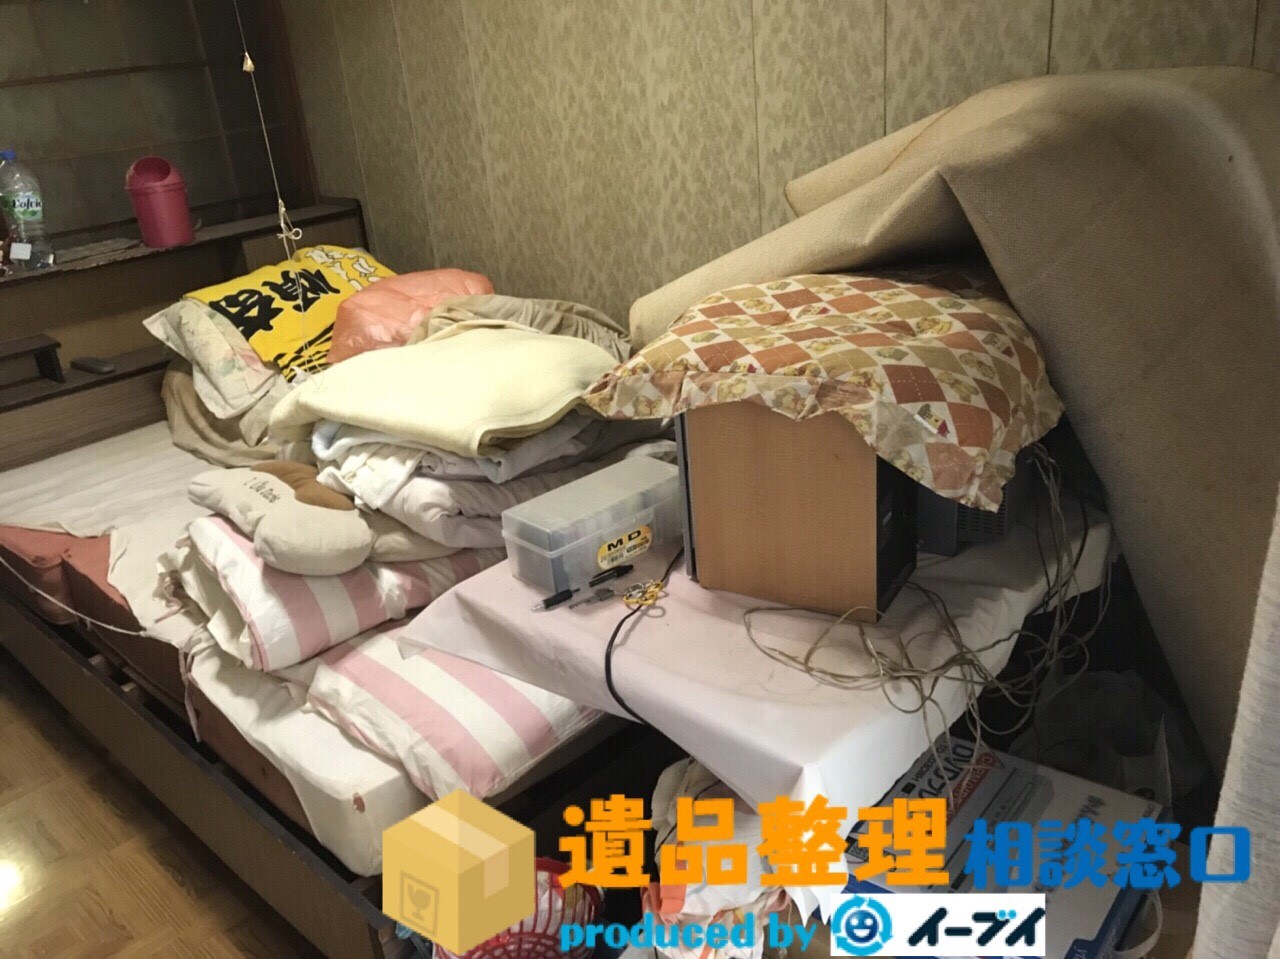 兵庫県伊丹市で家具処分やタンスの中身の片付けで遺品整理を利用していただきました。のアイキャッチ